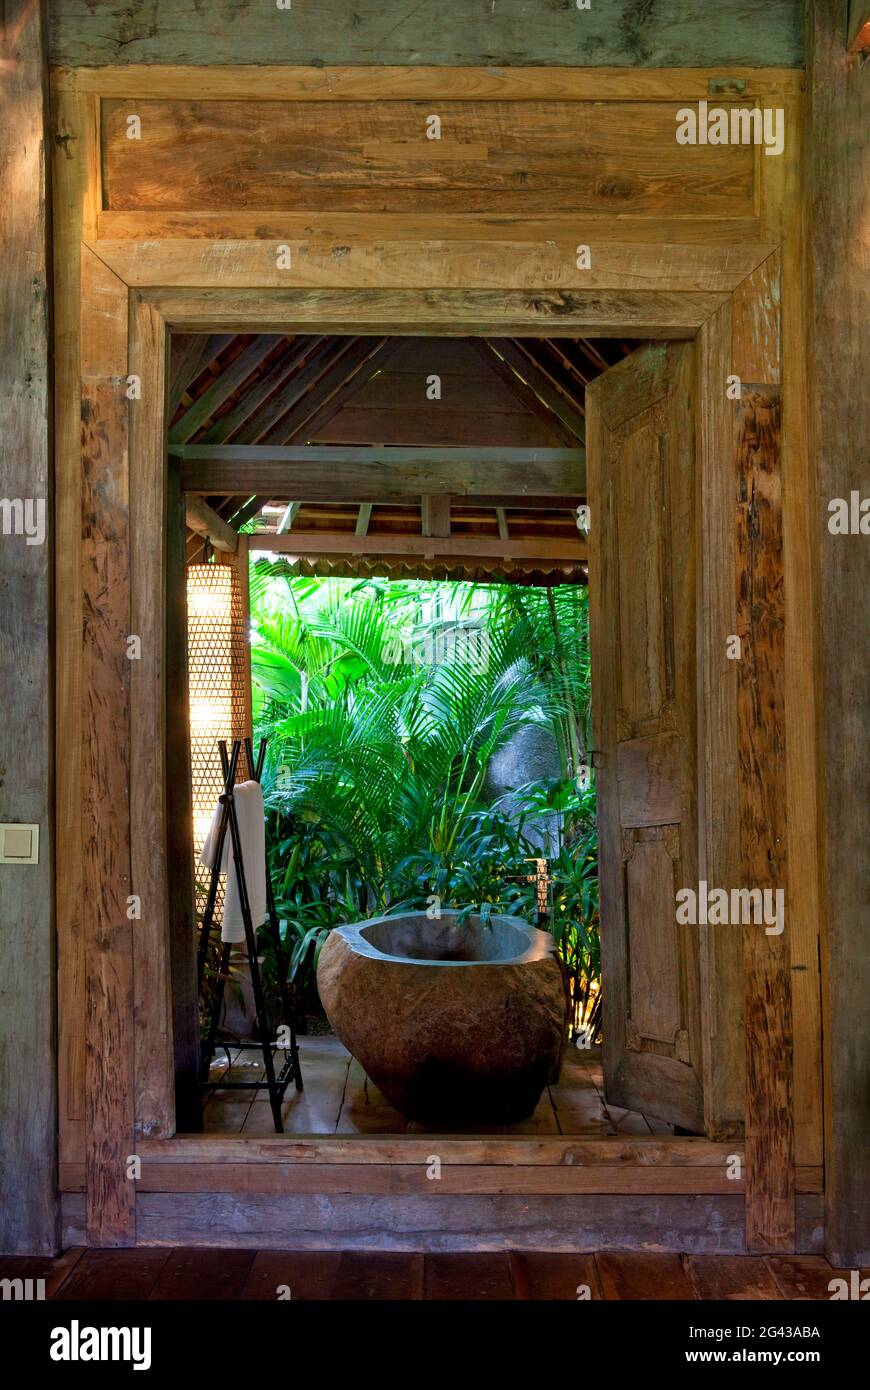 Baignoire en pierre située dans une salle de bains ouverte, dans une  ancienne maison en bois située dans la jungle. Bali, Indonésie Photo Stock  - Alamy